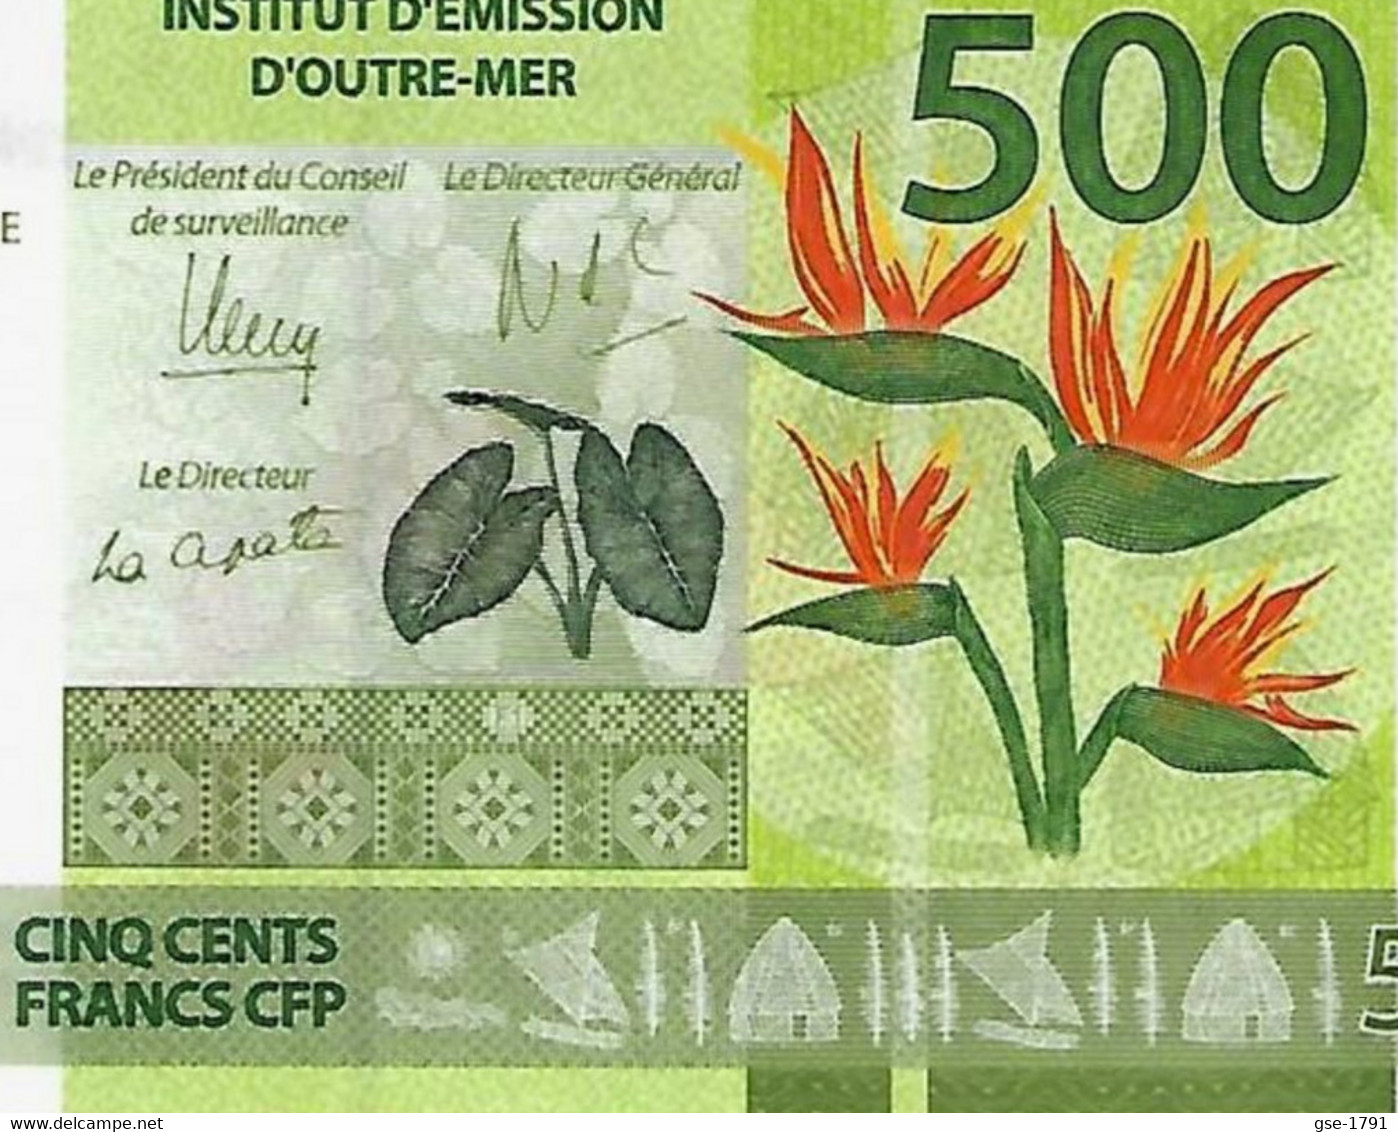 IEOM : Nlle CALEDONIE, TAHITI ,WALLIS  Nouveaux  Billets De 500 Francs 2014 1ère émission NEUF - Frans Pacific Gebieden (1992-...)